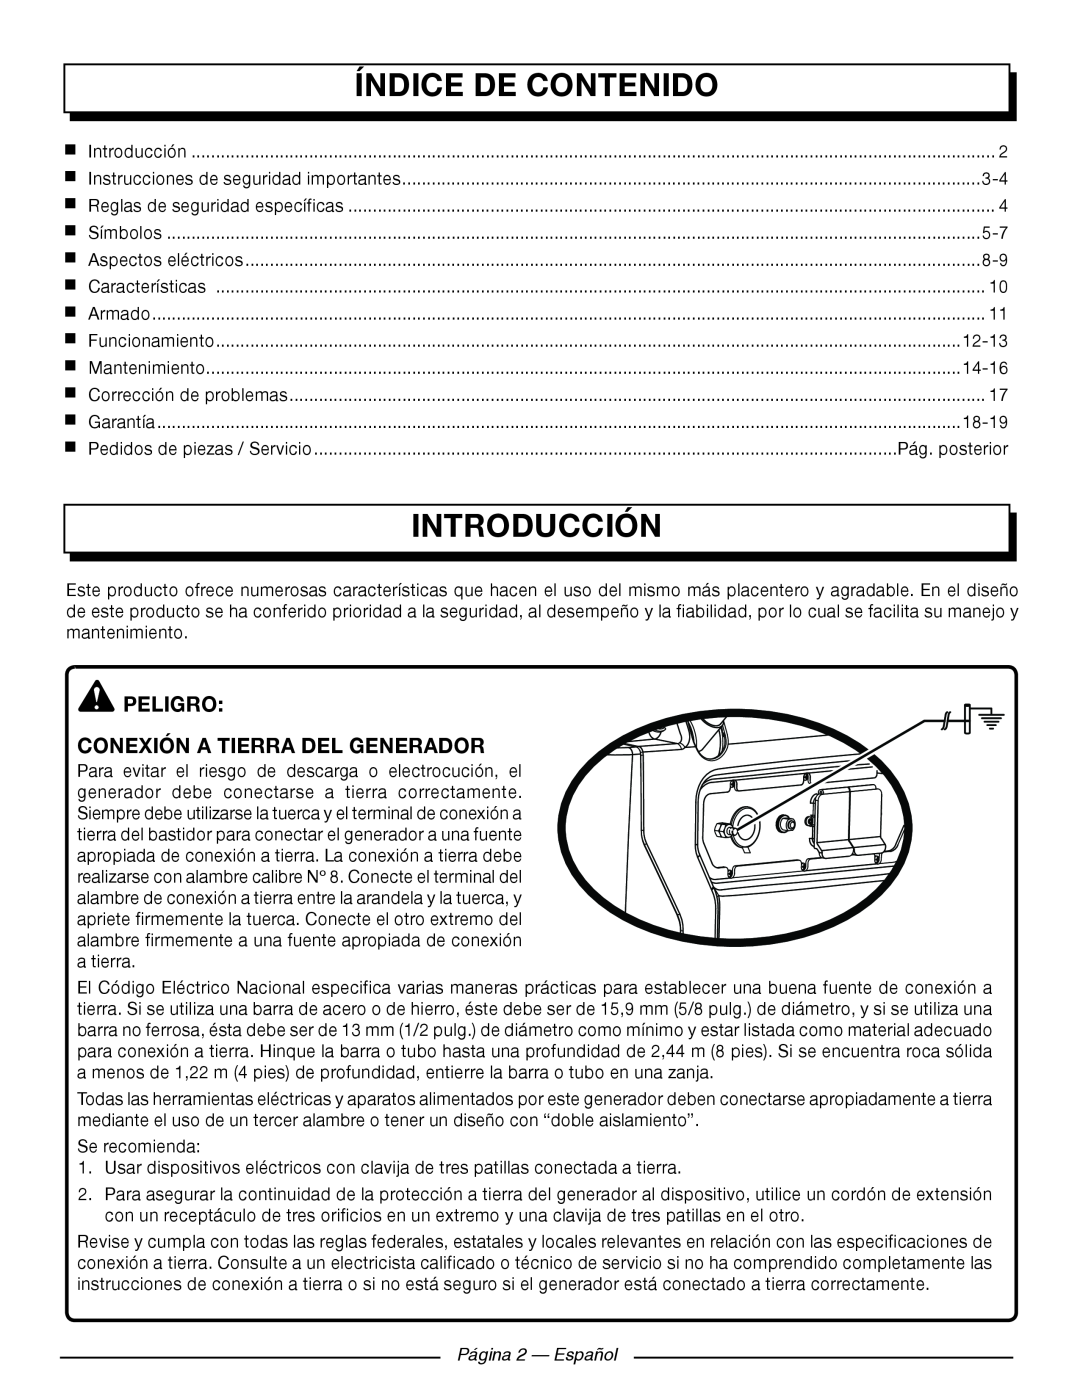 Homelite UT902250 Índice De Contenido, Introducción, Peligro Conexión A Tierra Del Generador, Página 2 — Español 